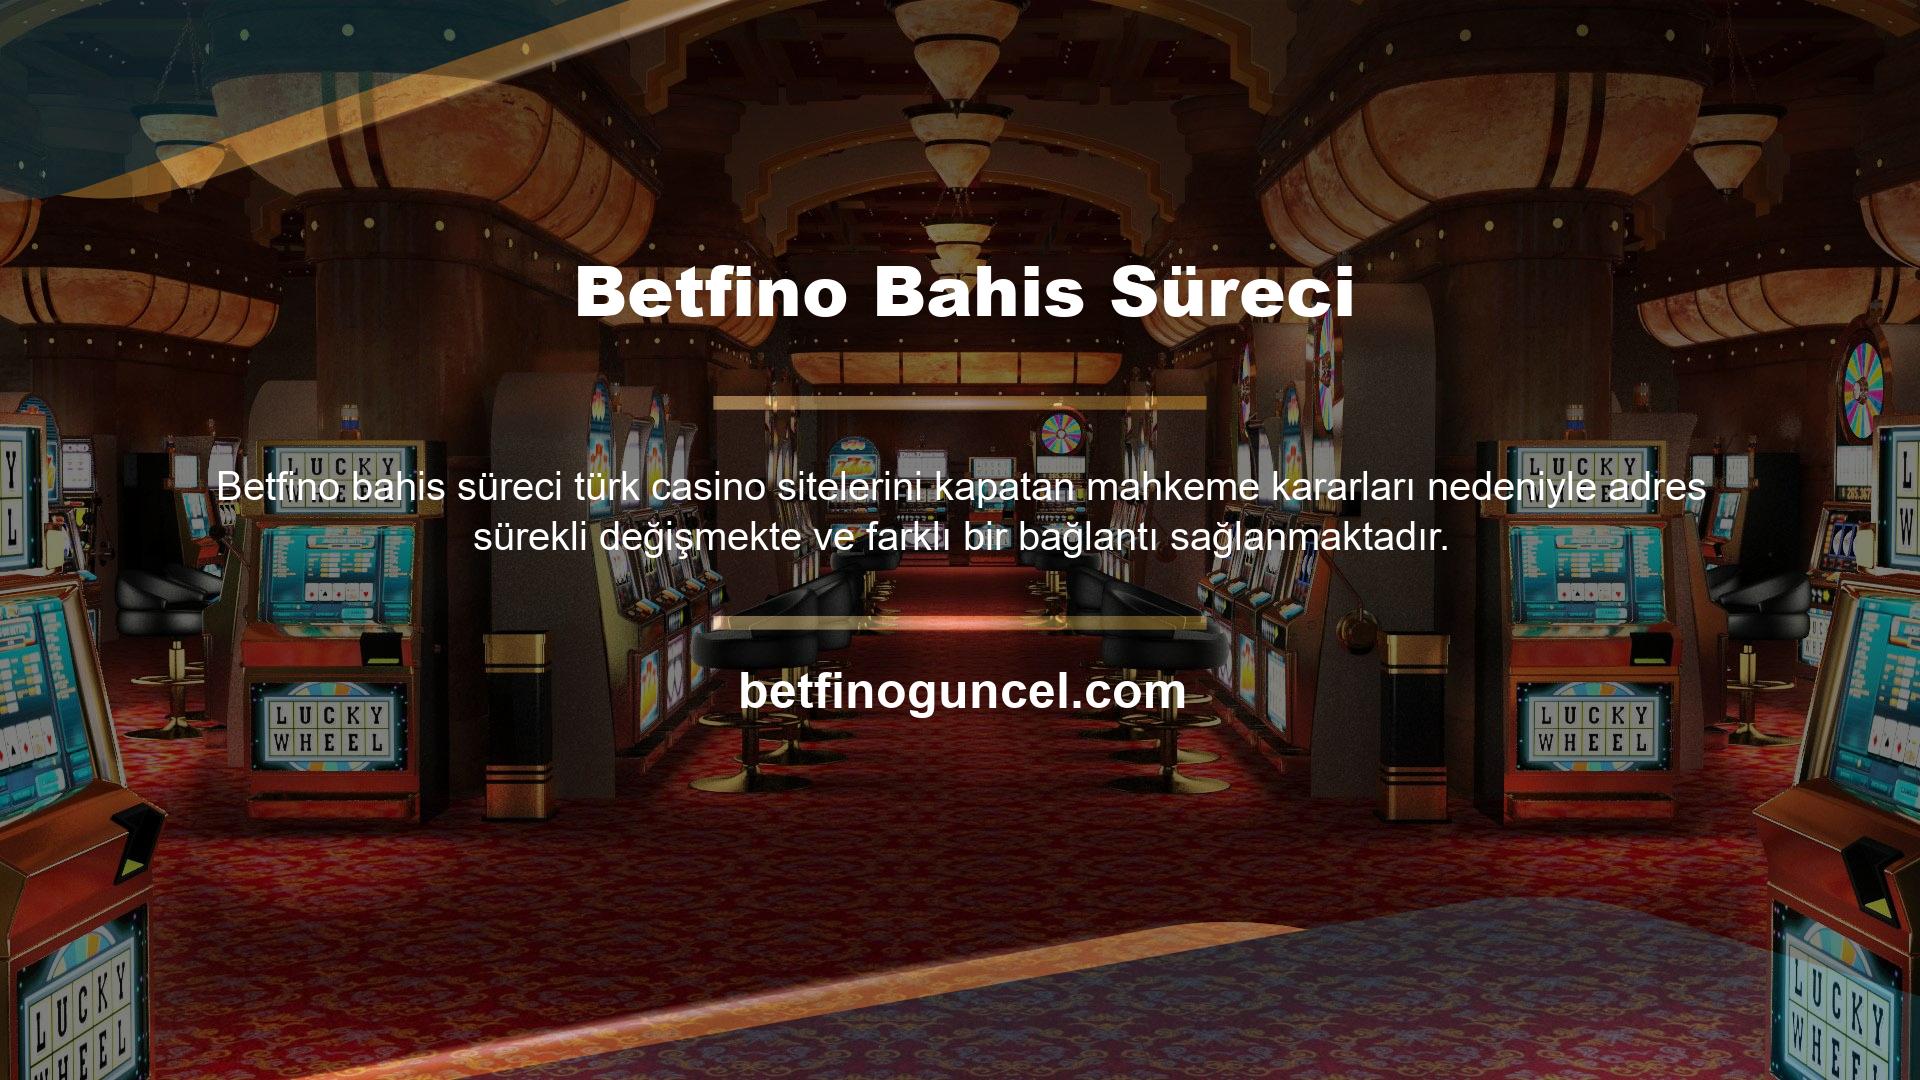 Sonuç olarak ekip, yeni kimlik bilgilerinin hesaba erişmek için kullanılabilmesi için Betfino oturum açma bilgilerini düzenli olarak değiştirir